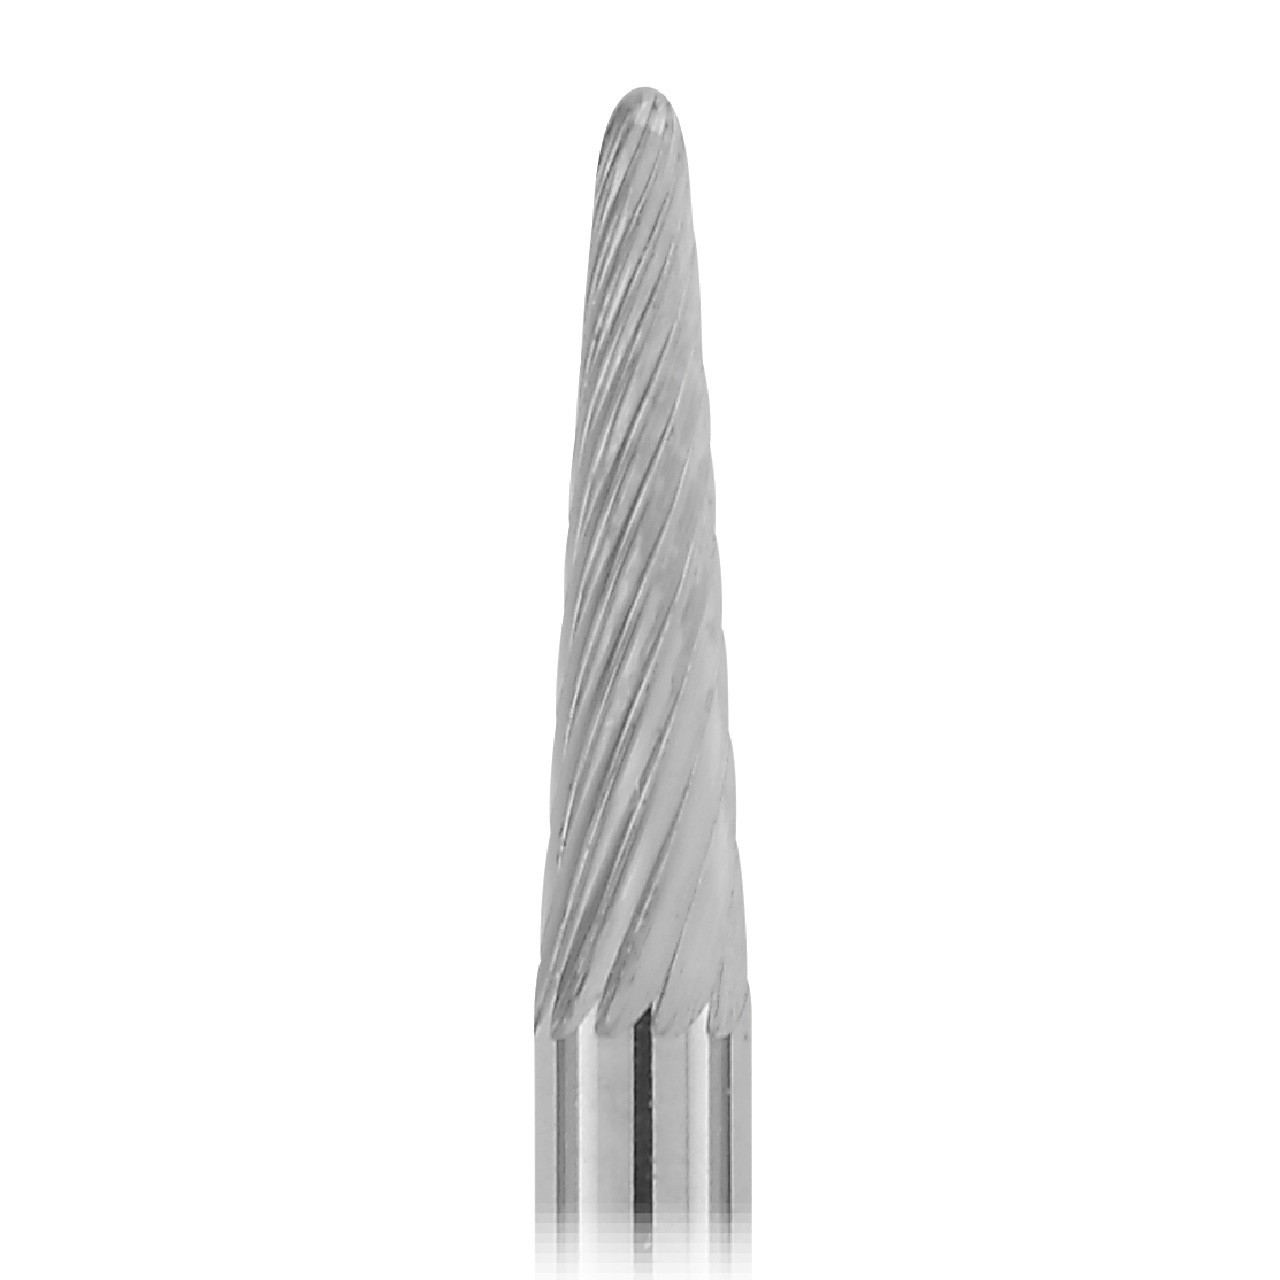 1-1/2" Solid Carbide Burs - 1/8" Shank, 1/8" x 1/2" Plain Cut Cone